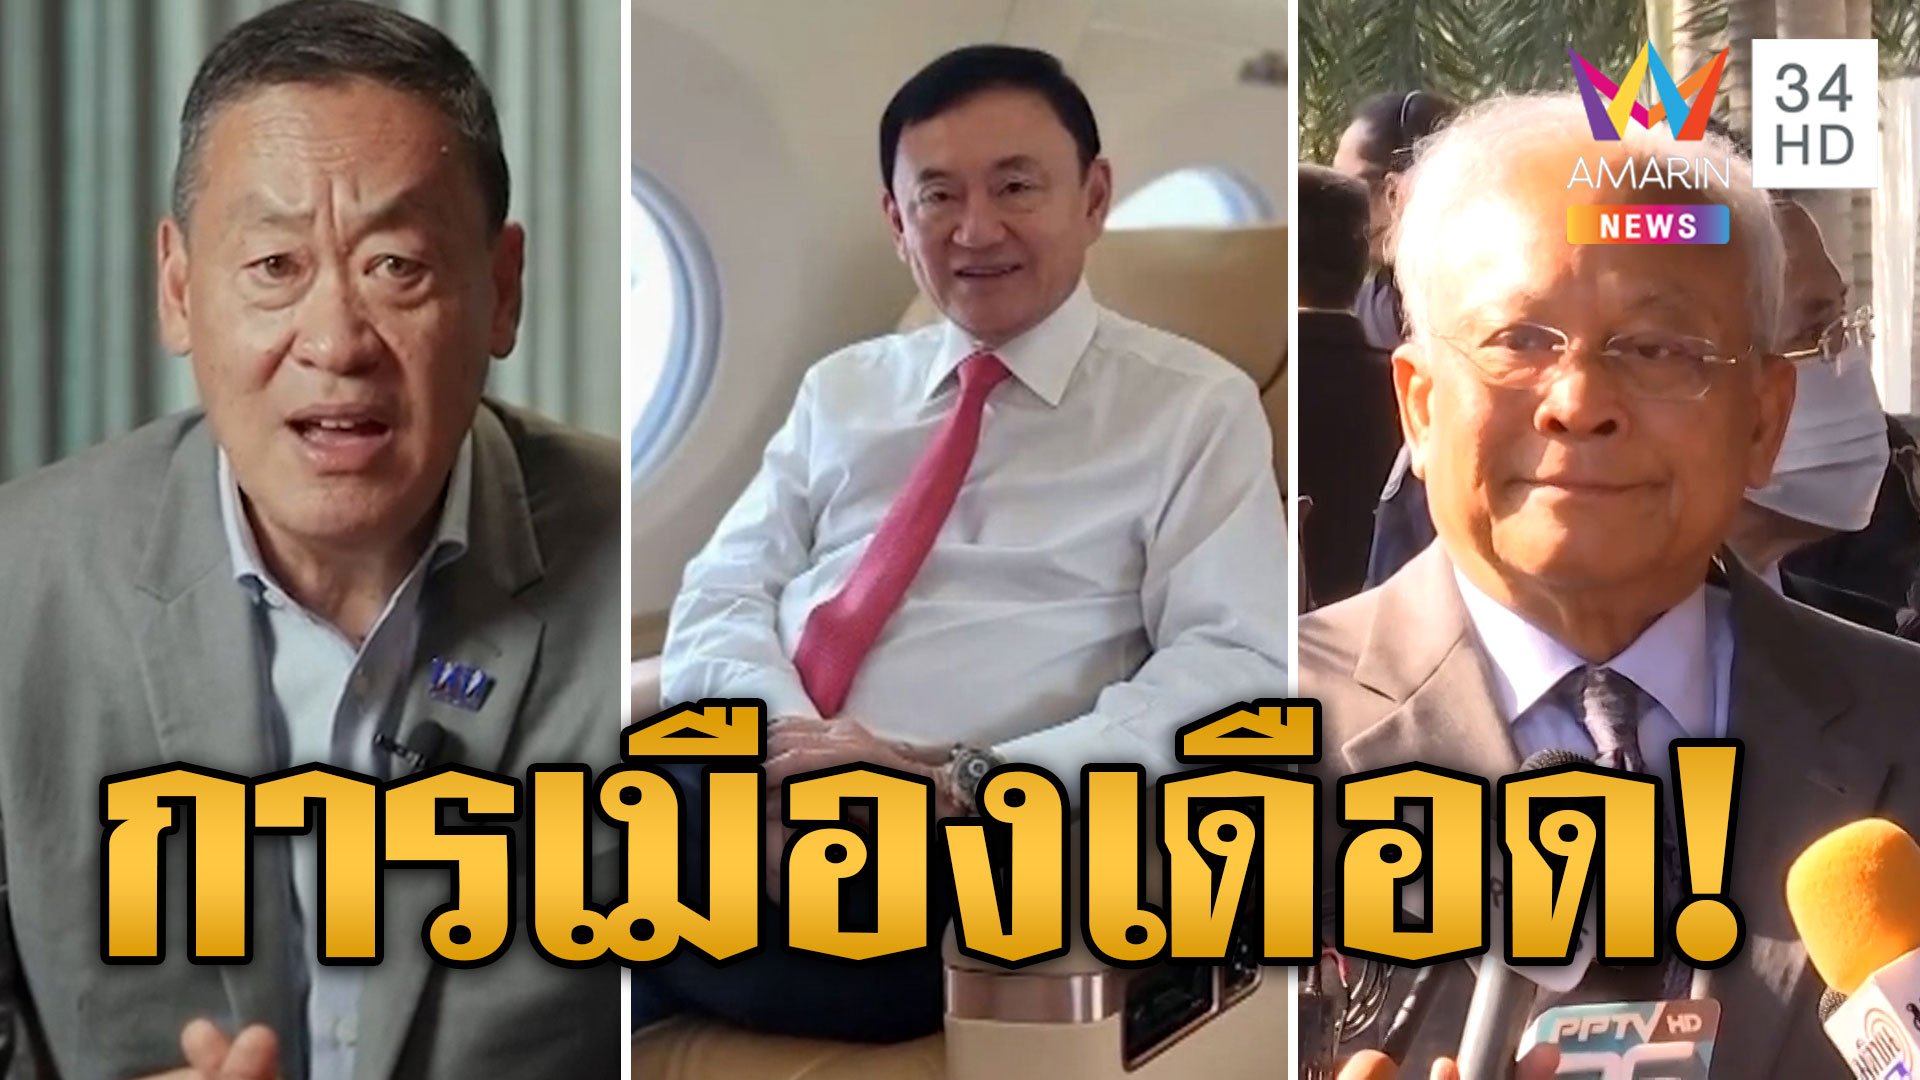 จับตา! 3 เหตุการณ์การเมืองไทย ทักษิณกลับไทย โหวตเศรษฐานั่งนายกฯ สุเทพคดีสร้างโรงพัก | ข่าวอรุณอมรินทร์ | 22 ส.ค. 66 | AMARIN TVHD34